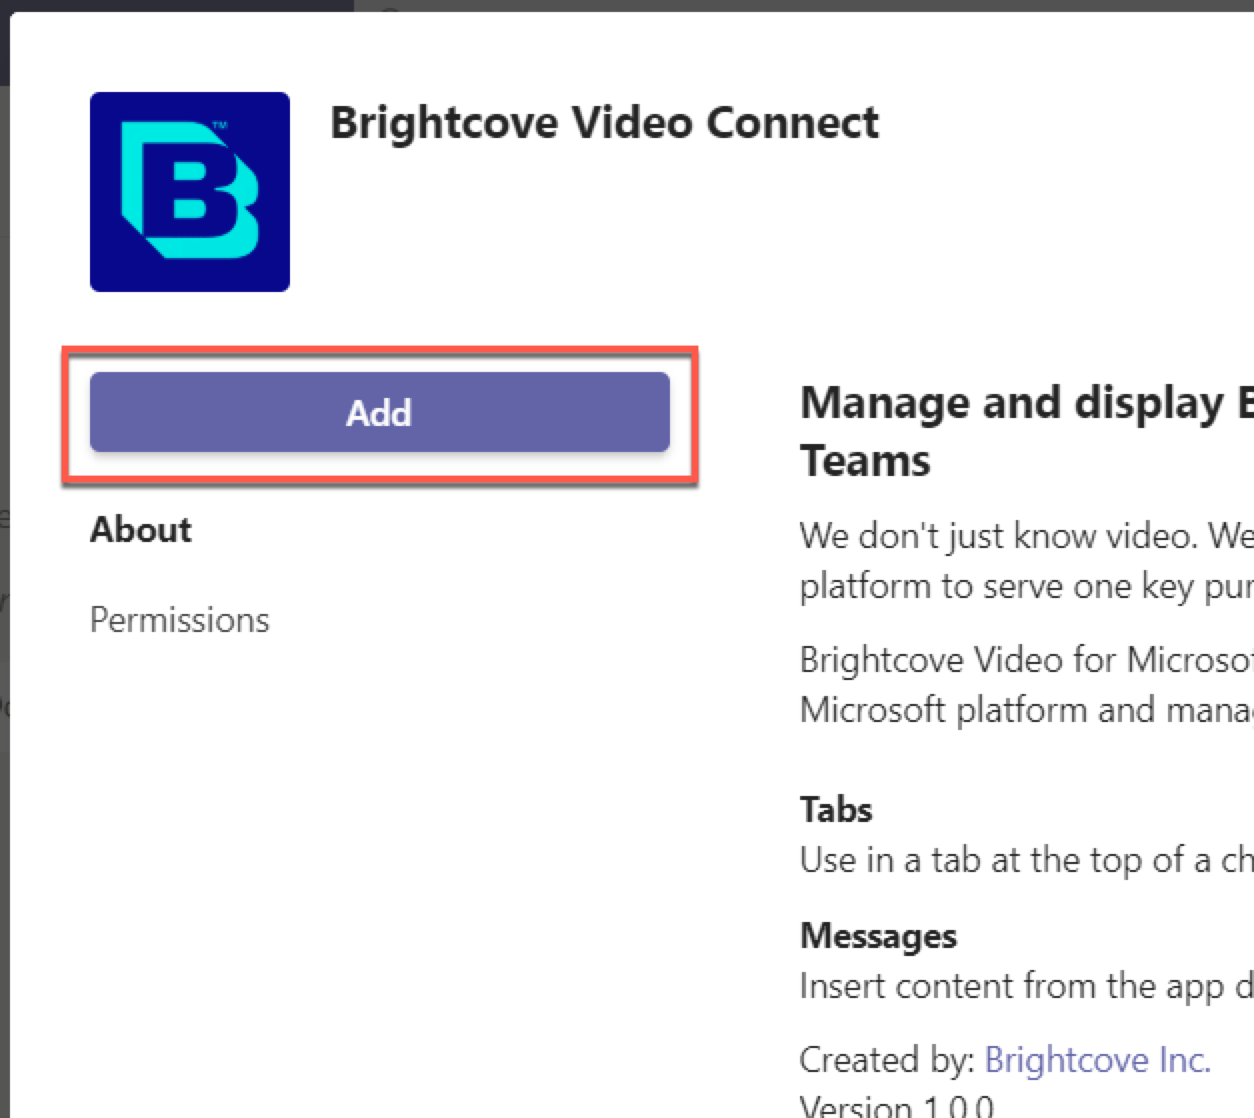 Add Brightcove Video Connect